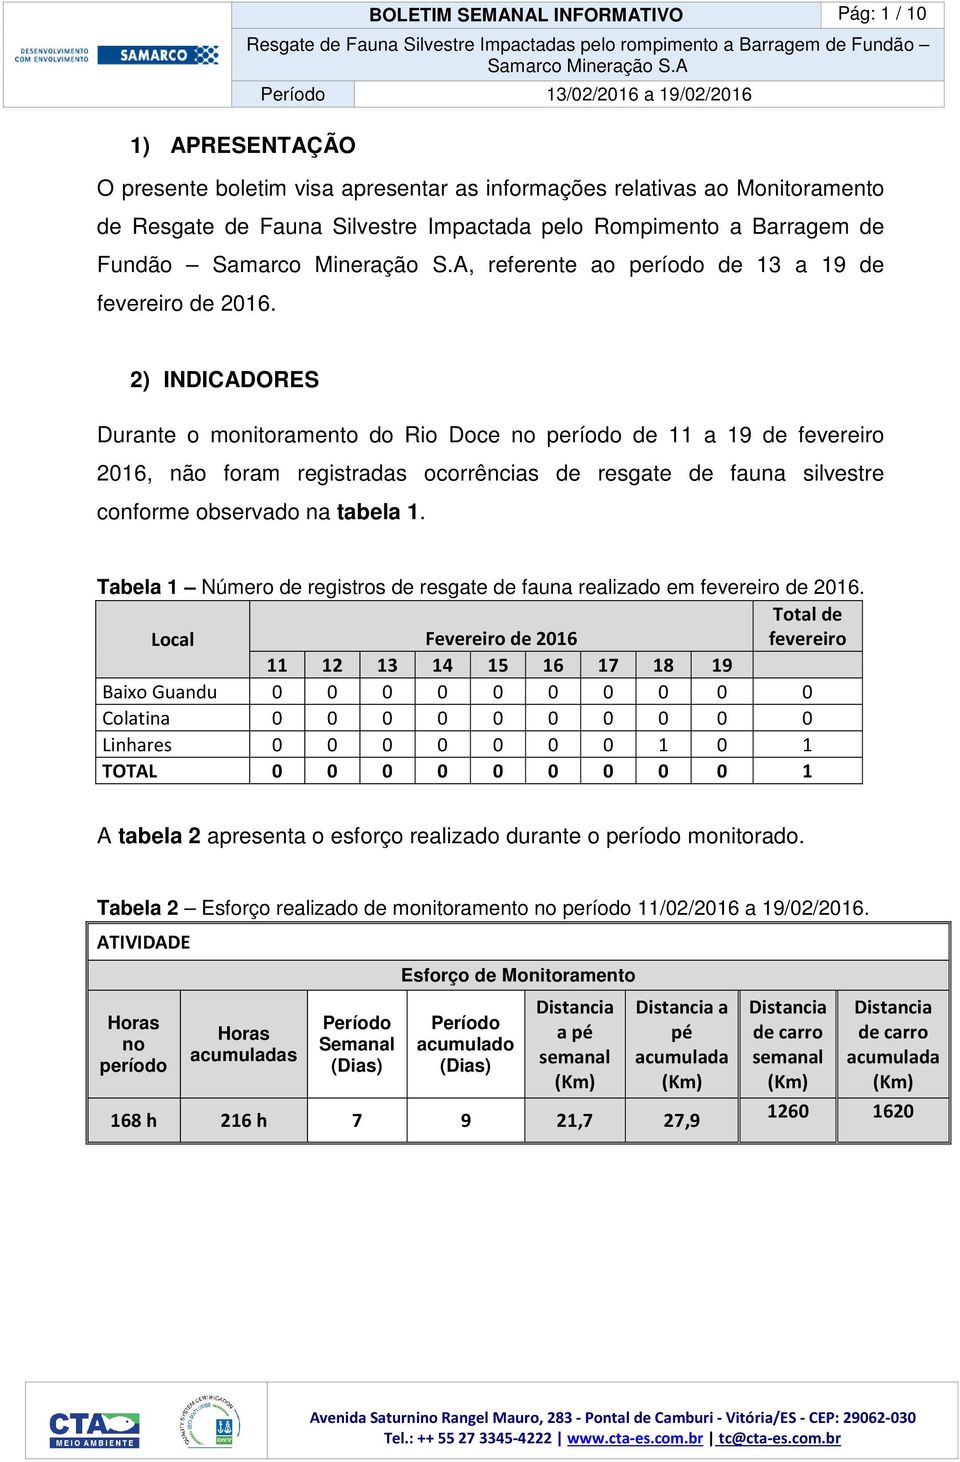 2) INDICADORES Durante o monitoramento do Rio Doce no período de 11 a 19 de fevereiro 2016, não foram registradas ocorrências de resgate de fauna silvestre conforme observado na tabela 1.